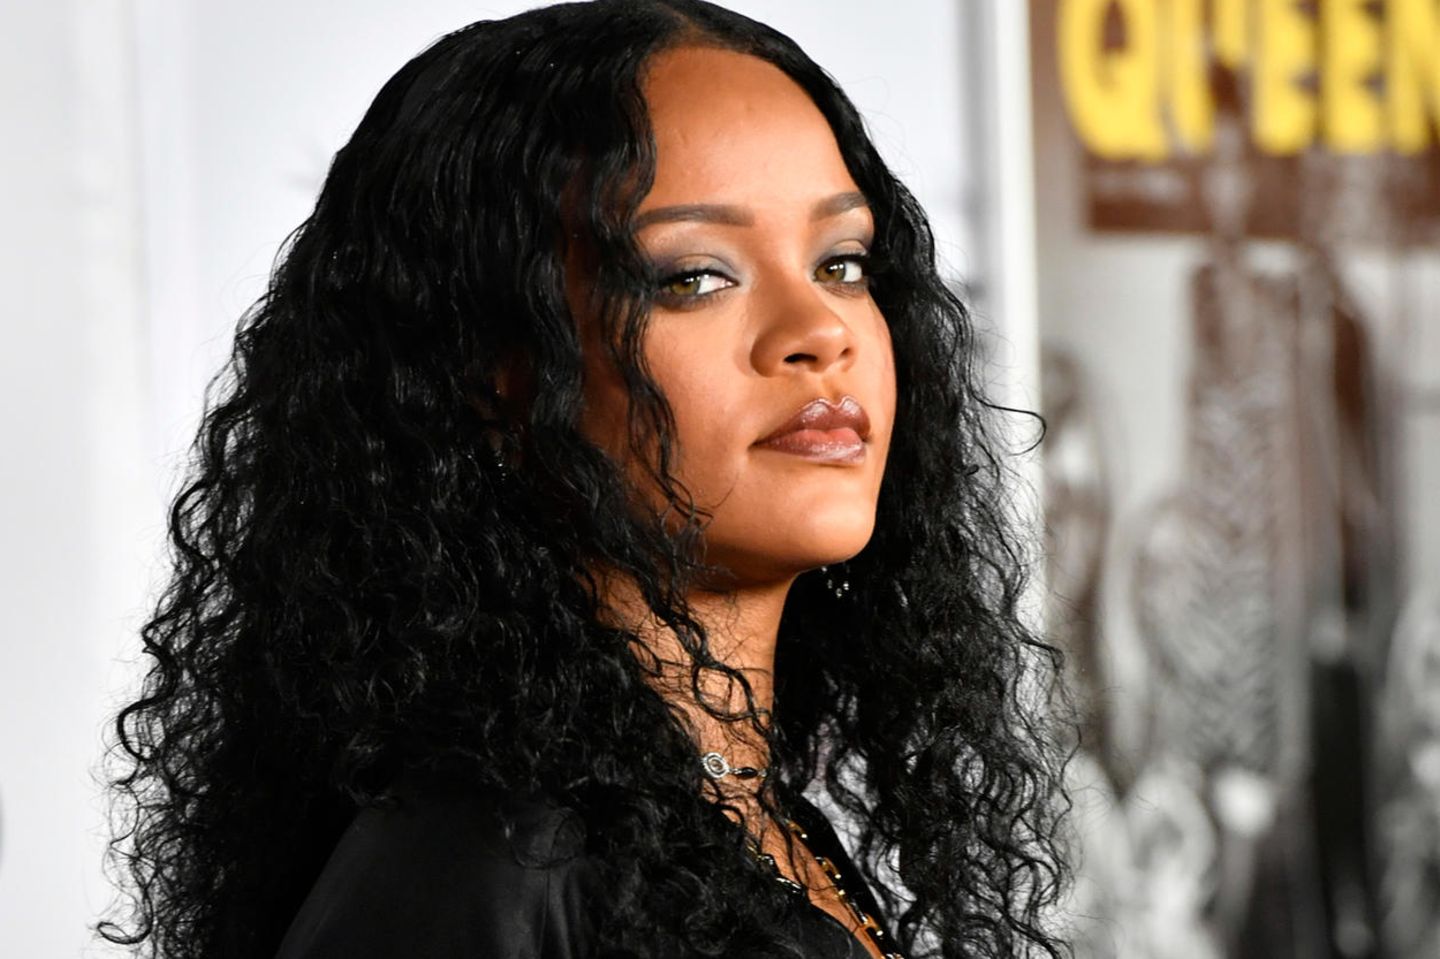 Warum hört man nichts mehr von Rihanna?